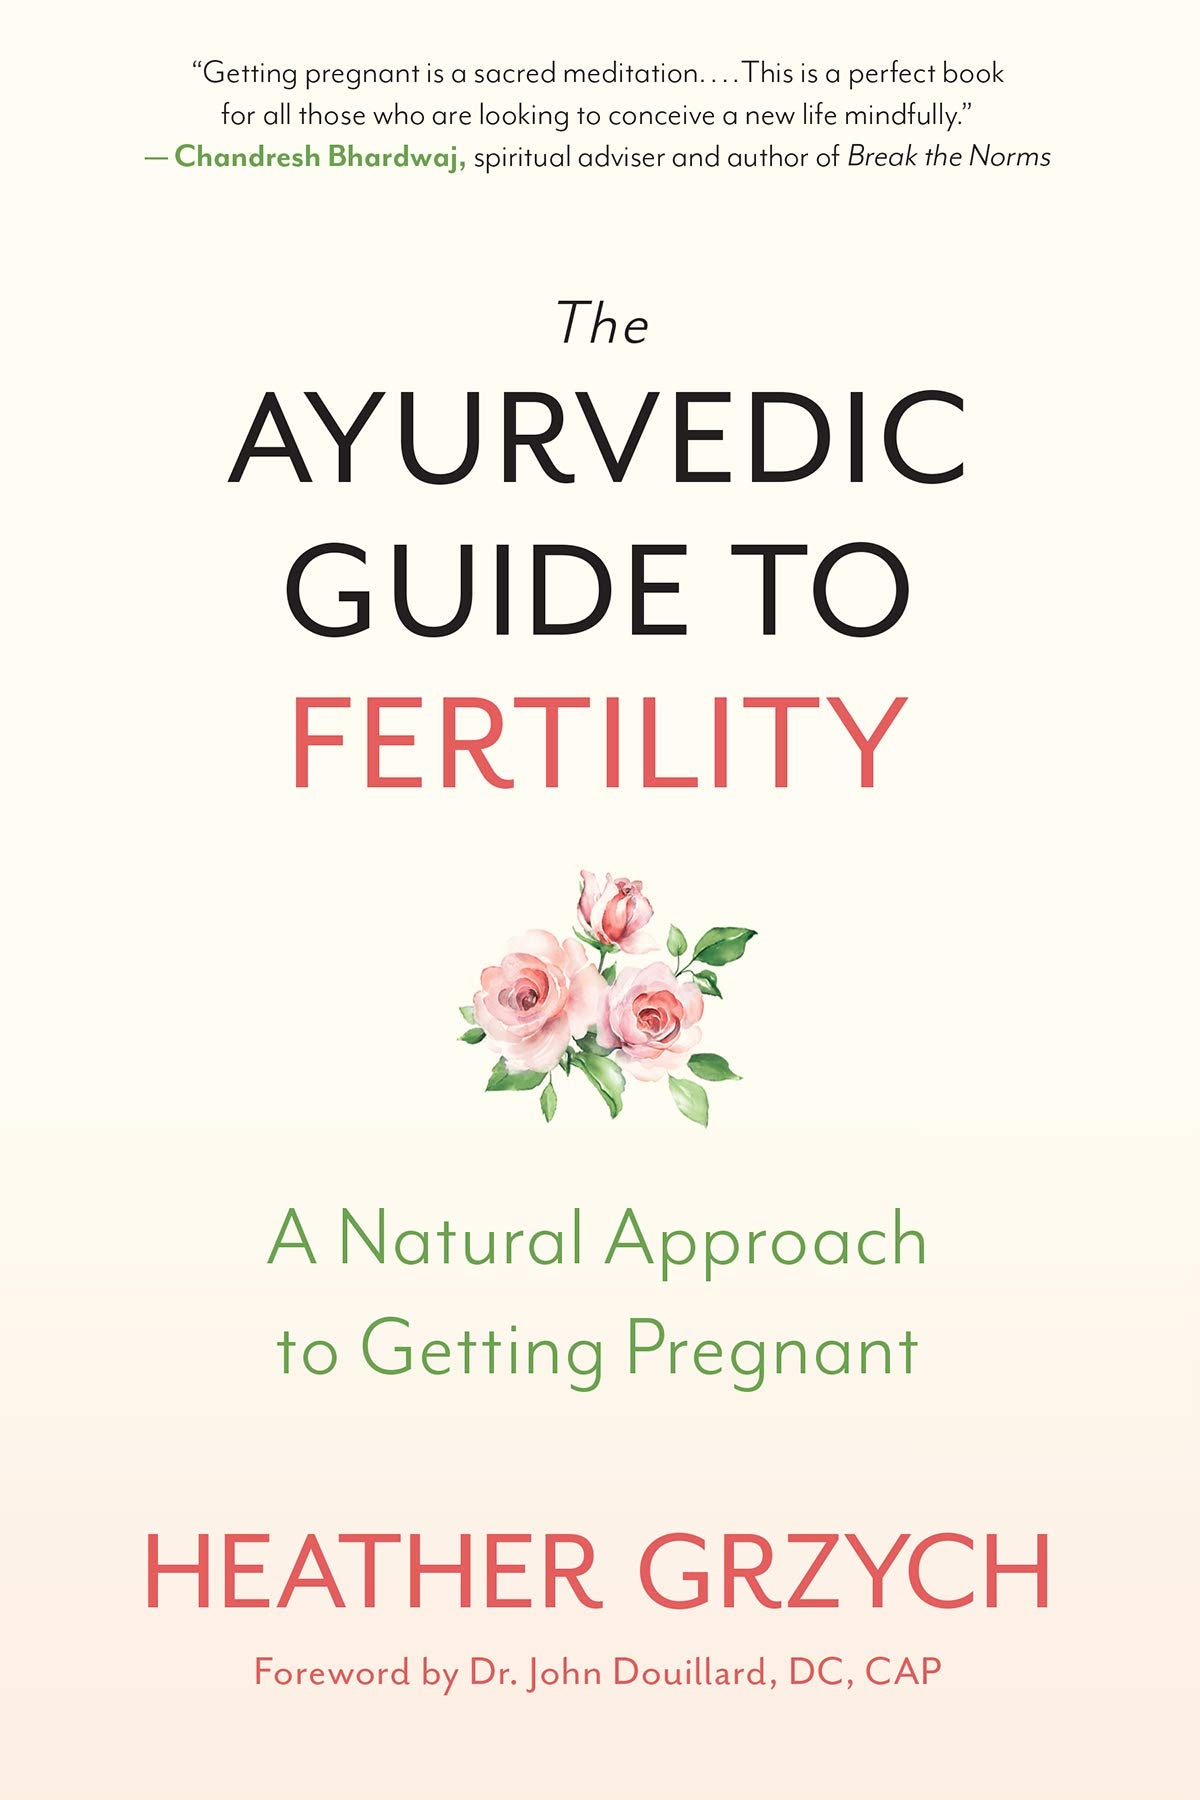 Ayurvedic Guide to Fertility by Heather Grzych